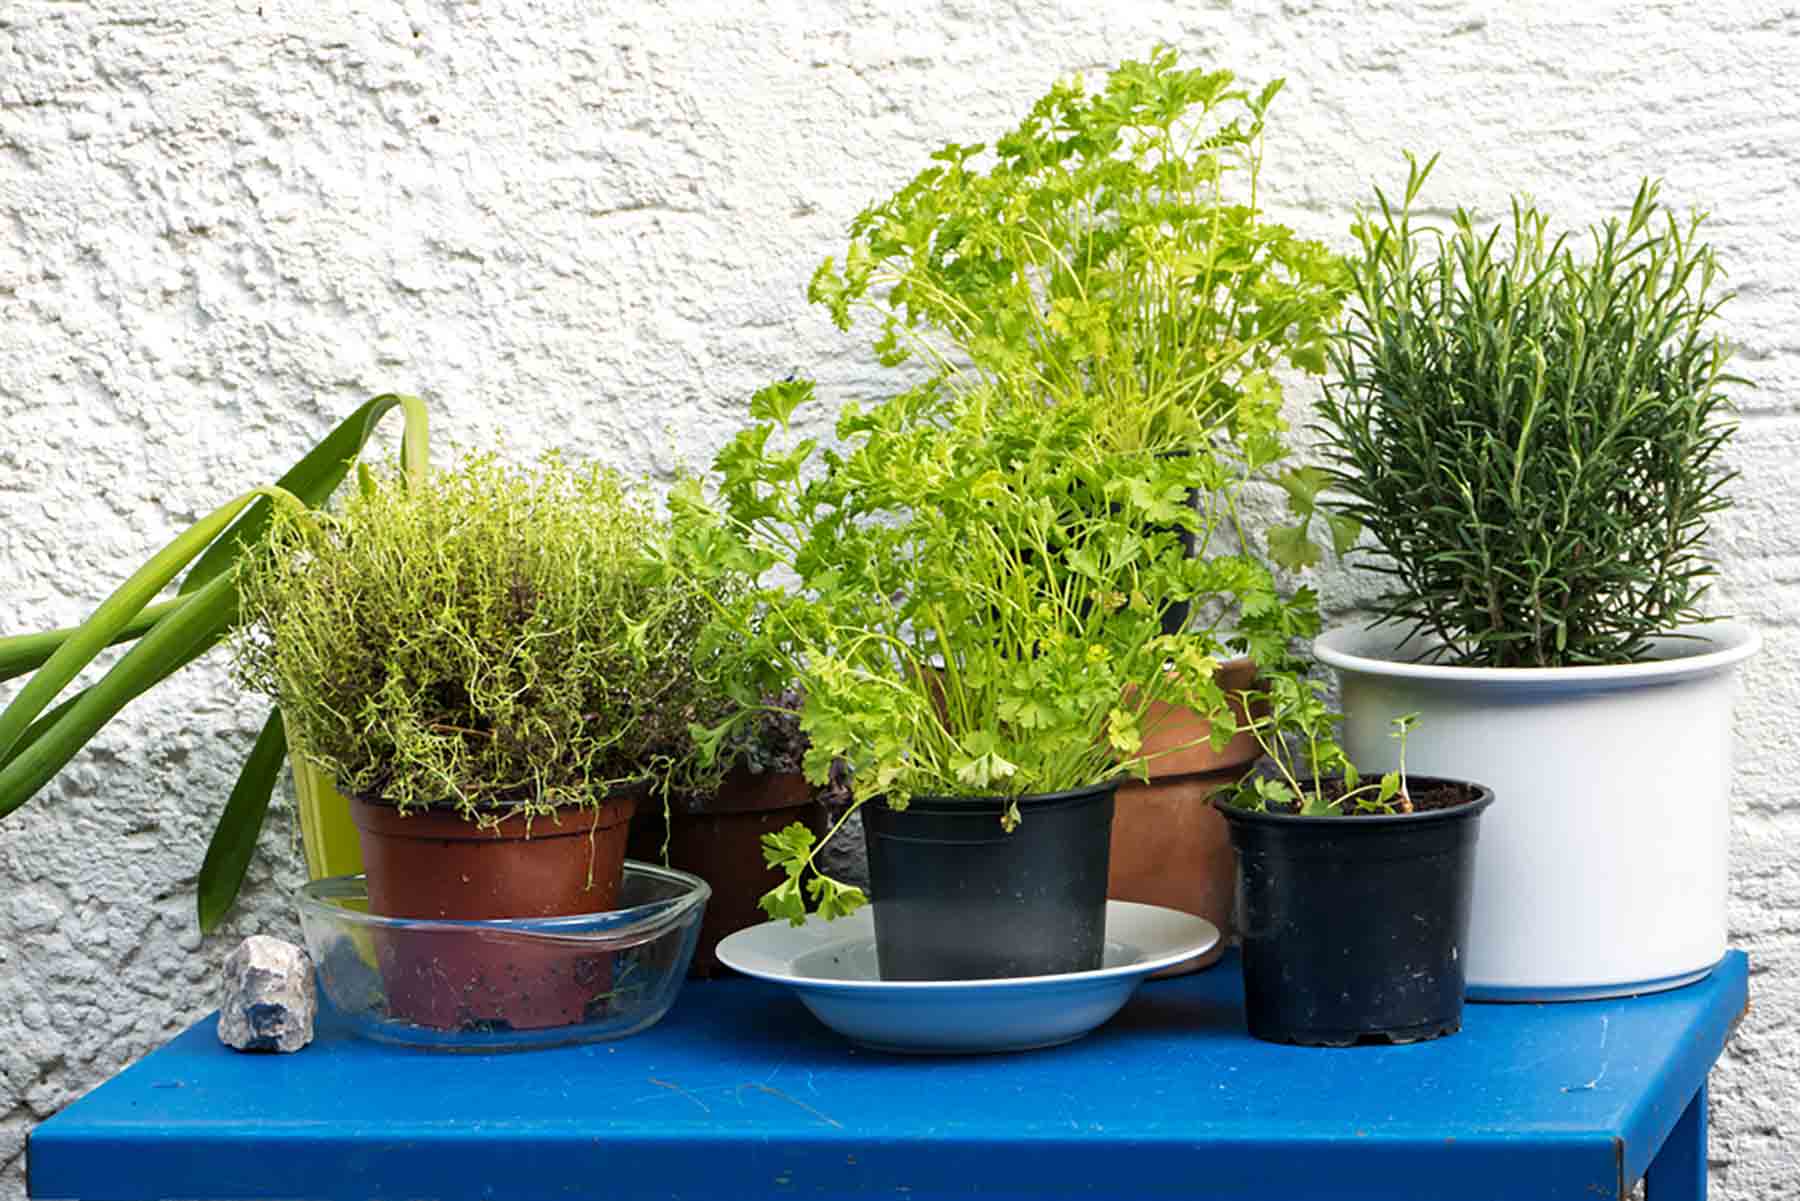 Green Summer: 3 Herbal Recipes